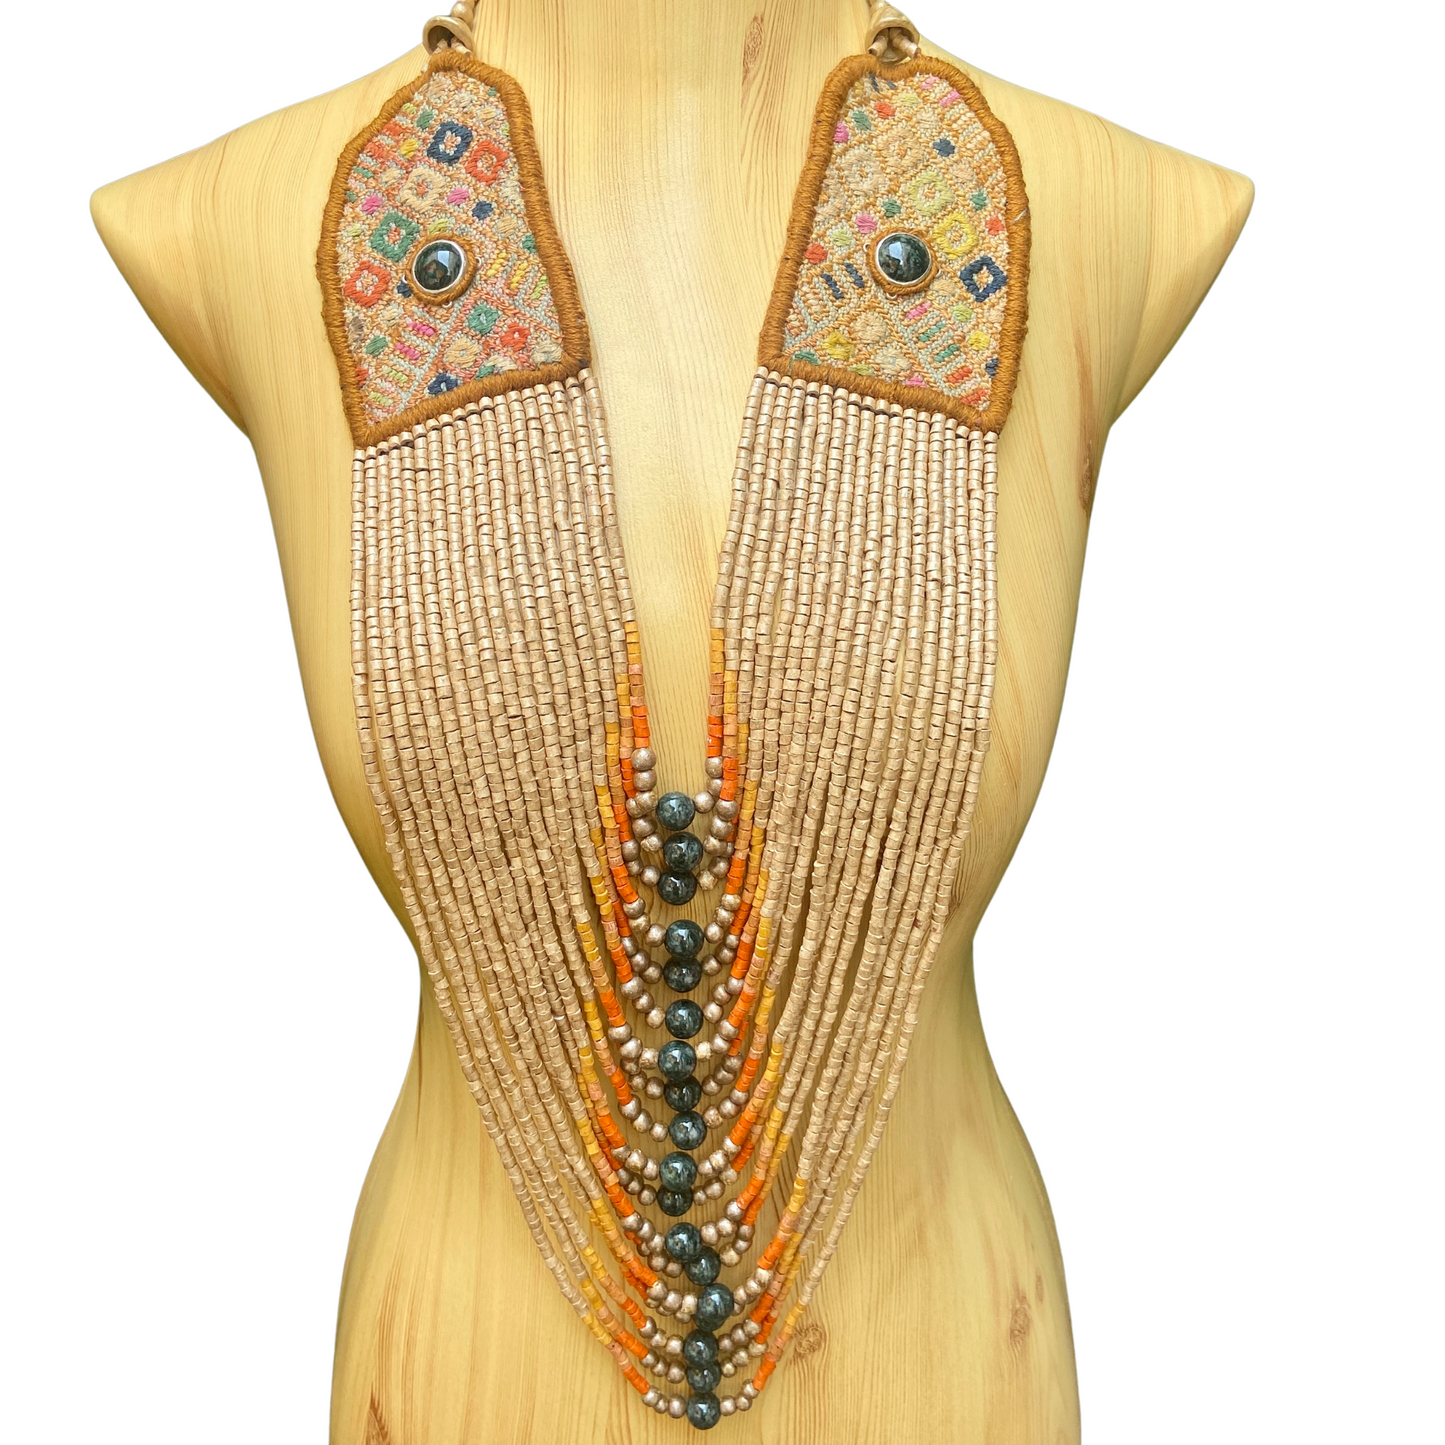 Textil Vintage con Pecheras de Jade - "Jade Exclusiva"